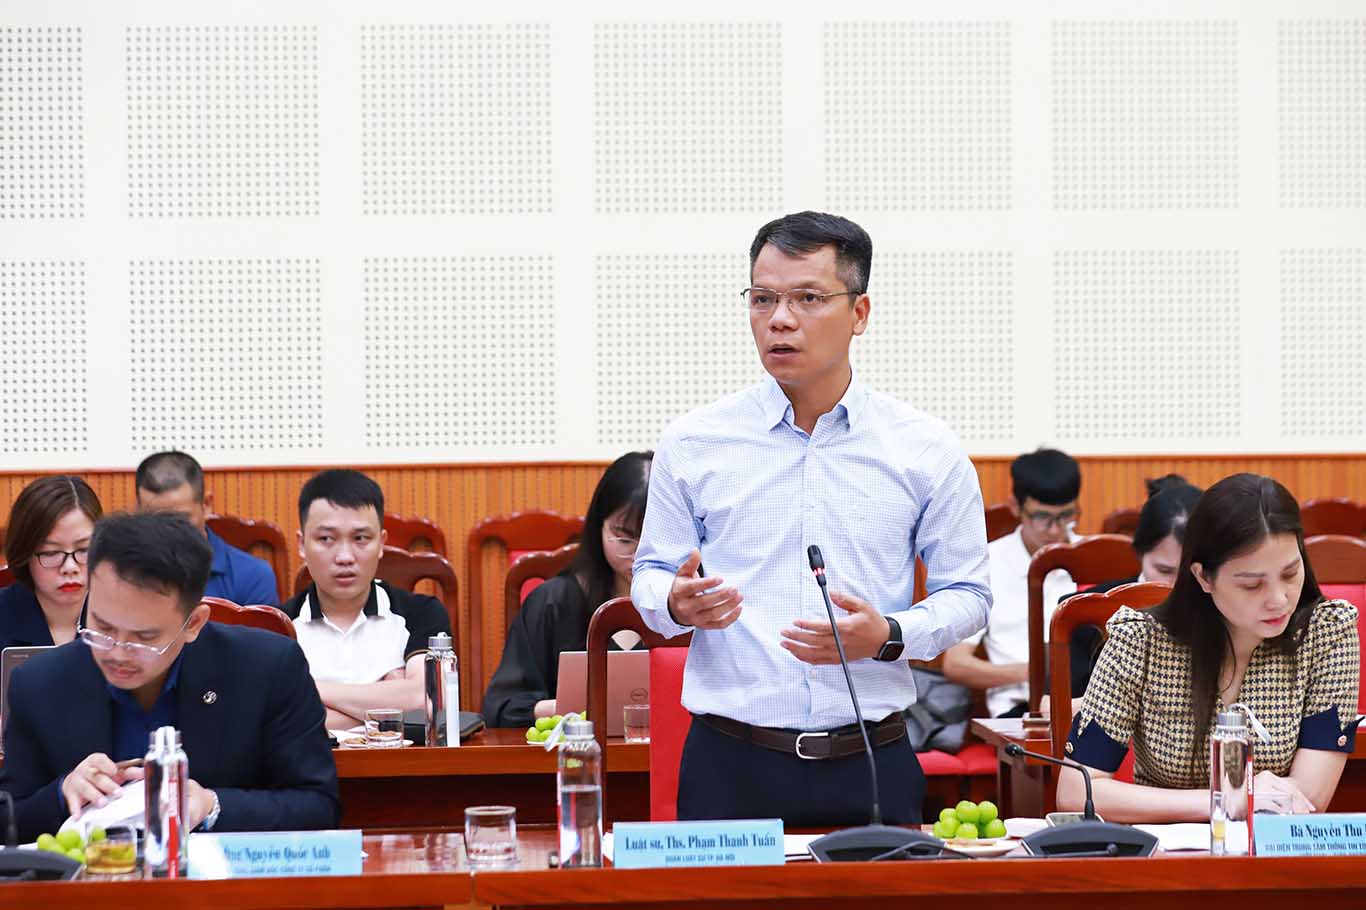 Luật sư, ThS Phạm Thanh Tuấn - Đoàn Luật sư TP Hà Nội, chuyên gia pháp lý bất động sản 